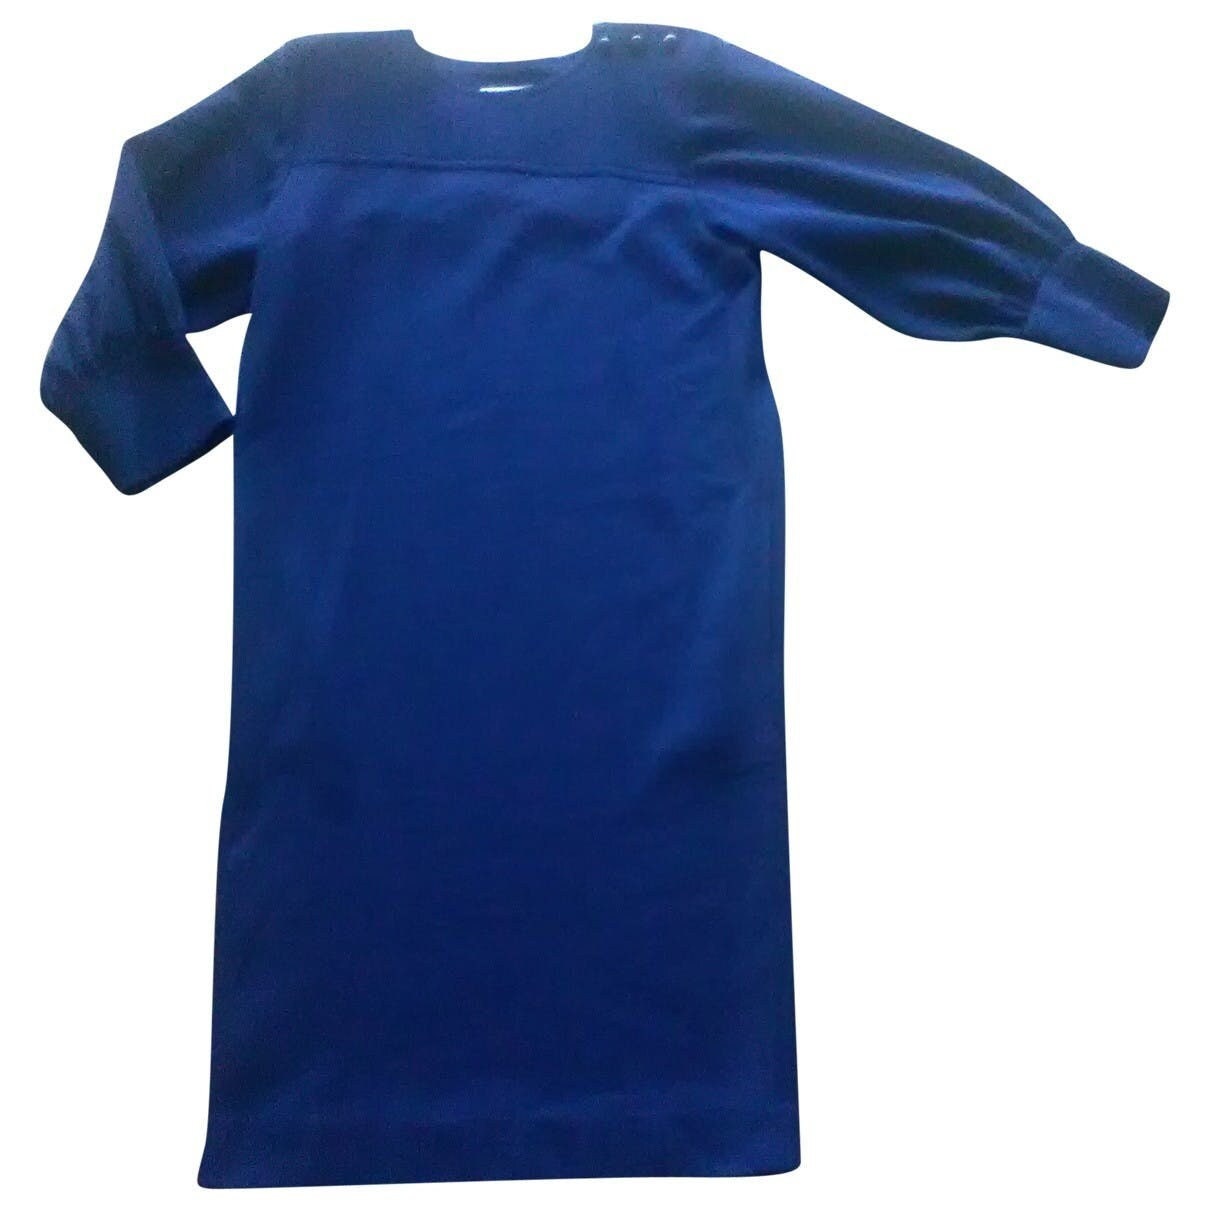 Louis Vuitton Monogram Crepe Short-sleeved Shirt Blue. Size M0